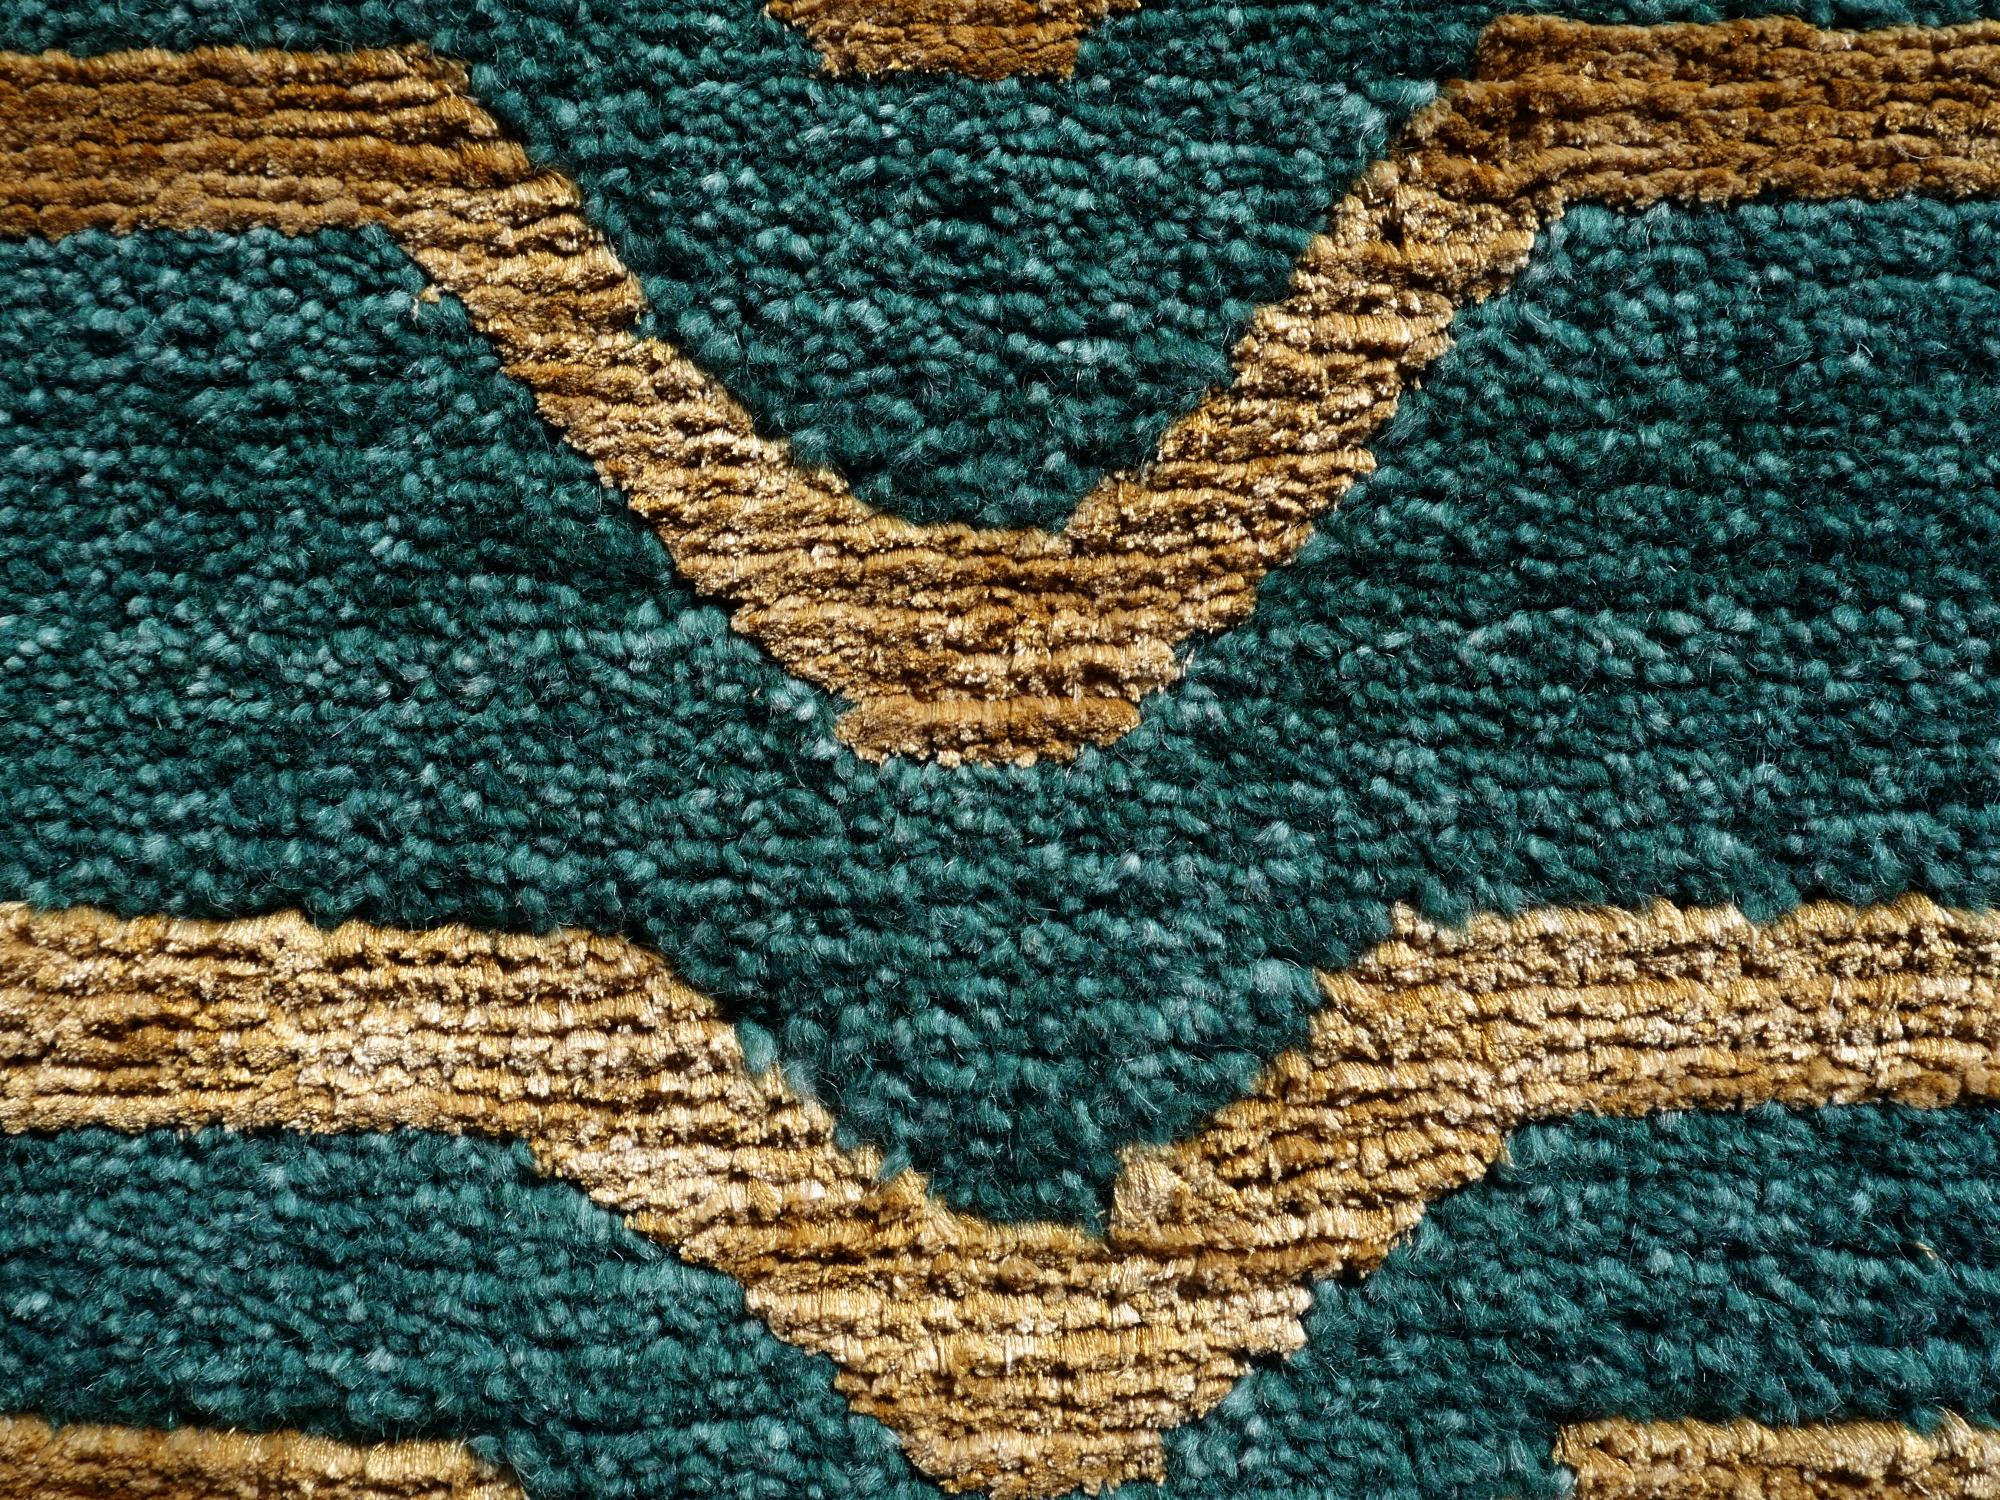 Tibetan Tiger Rug Green Wool Gold Silk von Djoharian Collection, handgeknüpft in Nepal.

Dieses traditionelle Tiger-Muster findet sich typischerweise auf antiken Teppichen, die Khaden genannt werden. Er beschreibt einen kleinen Teppich von etwa 3 x